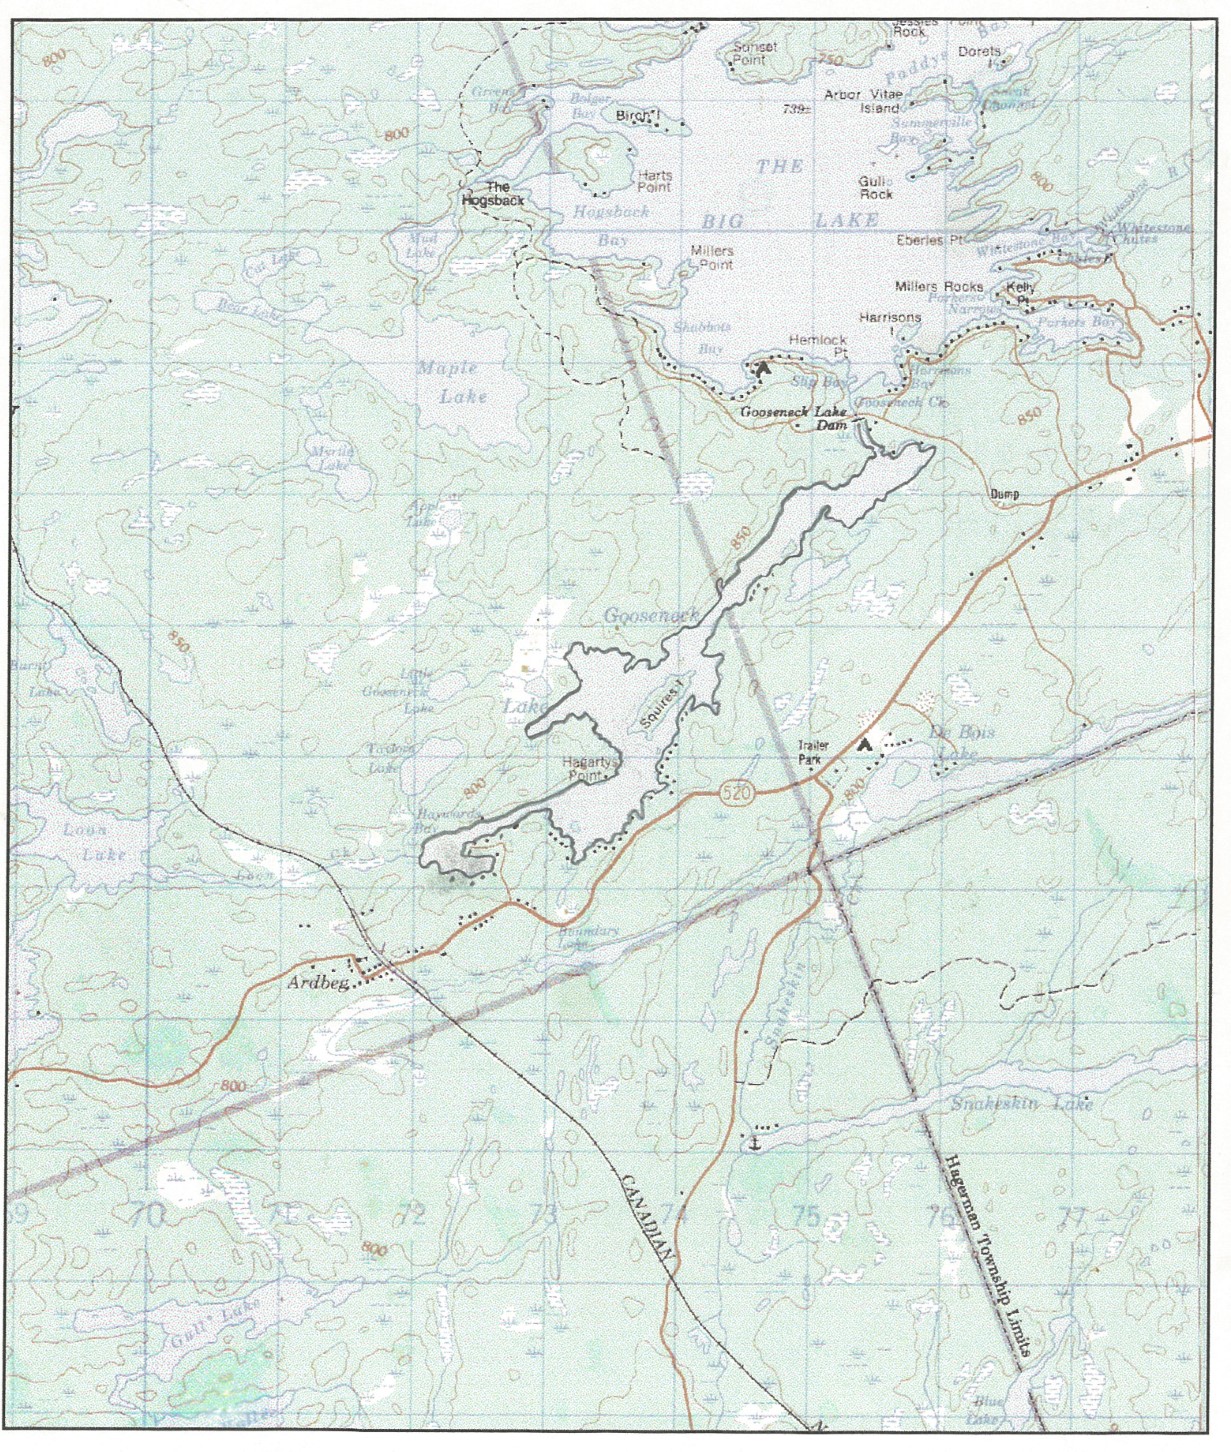 gooseneck lake map